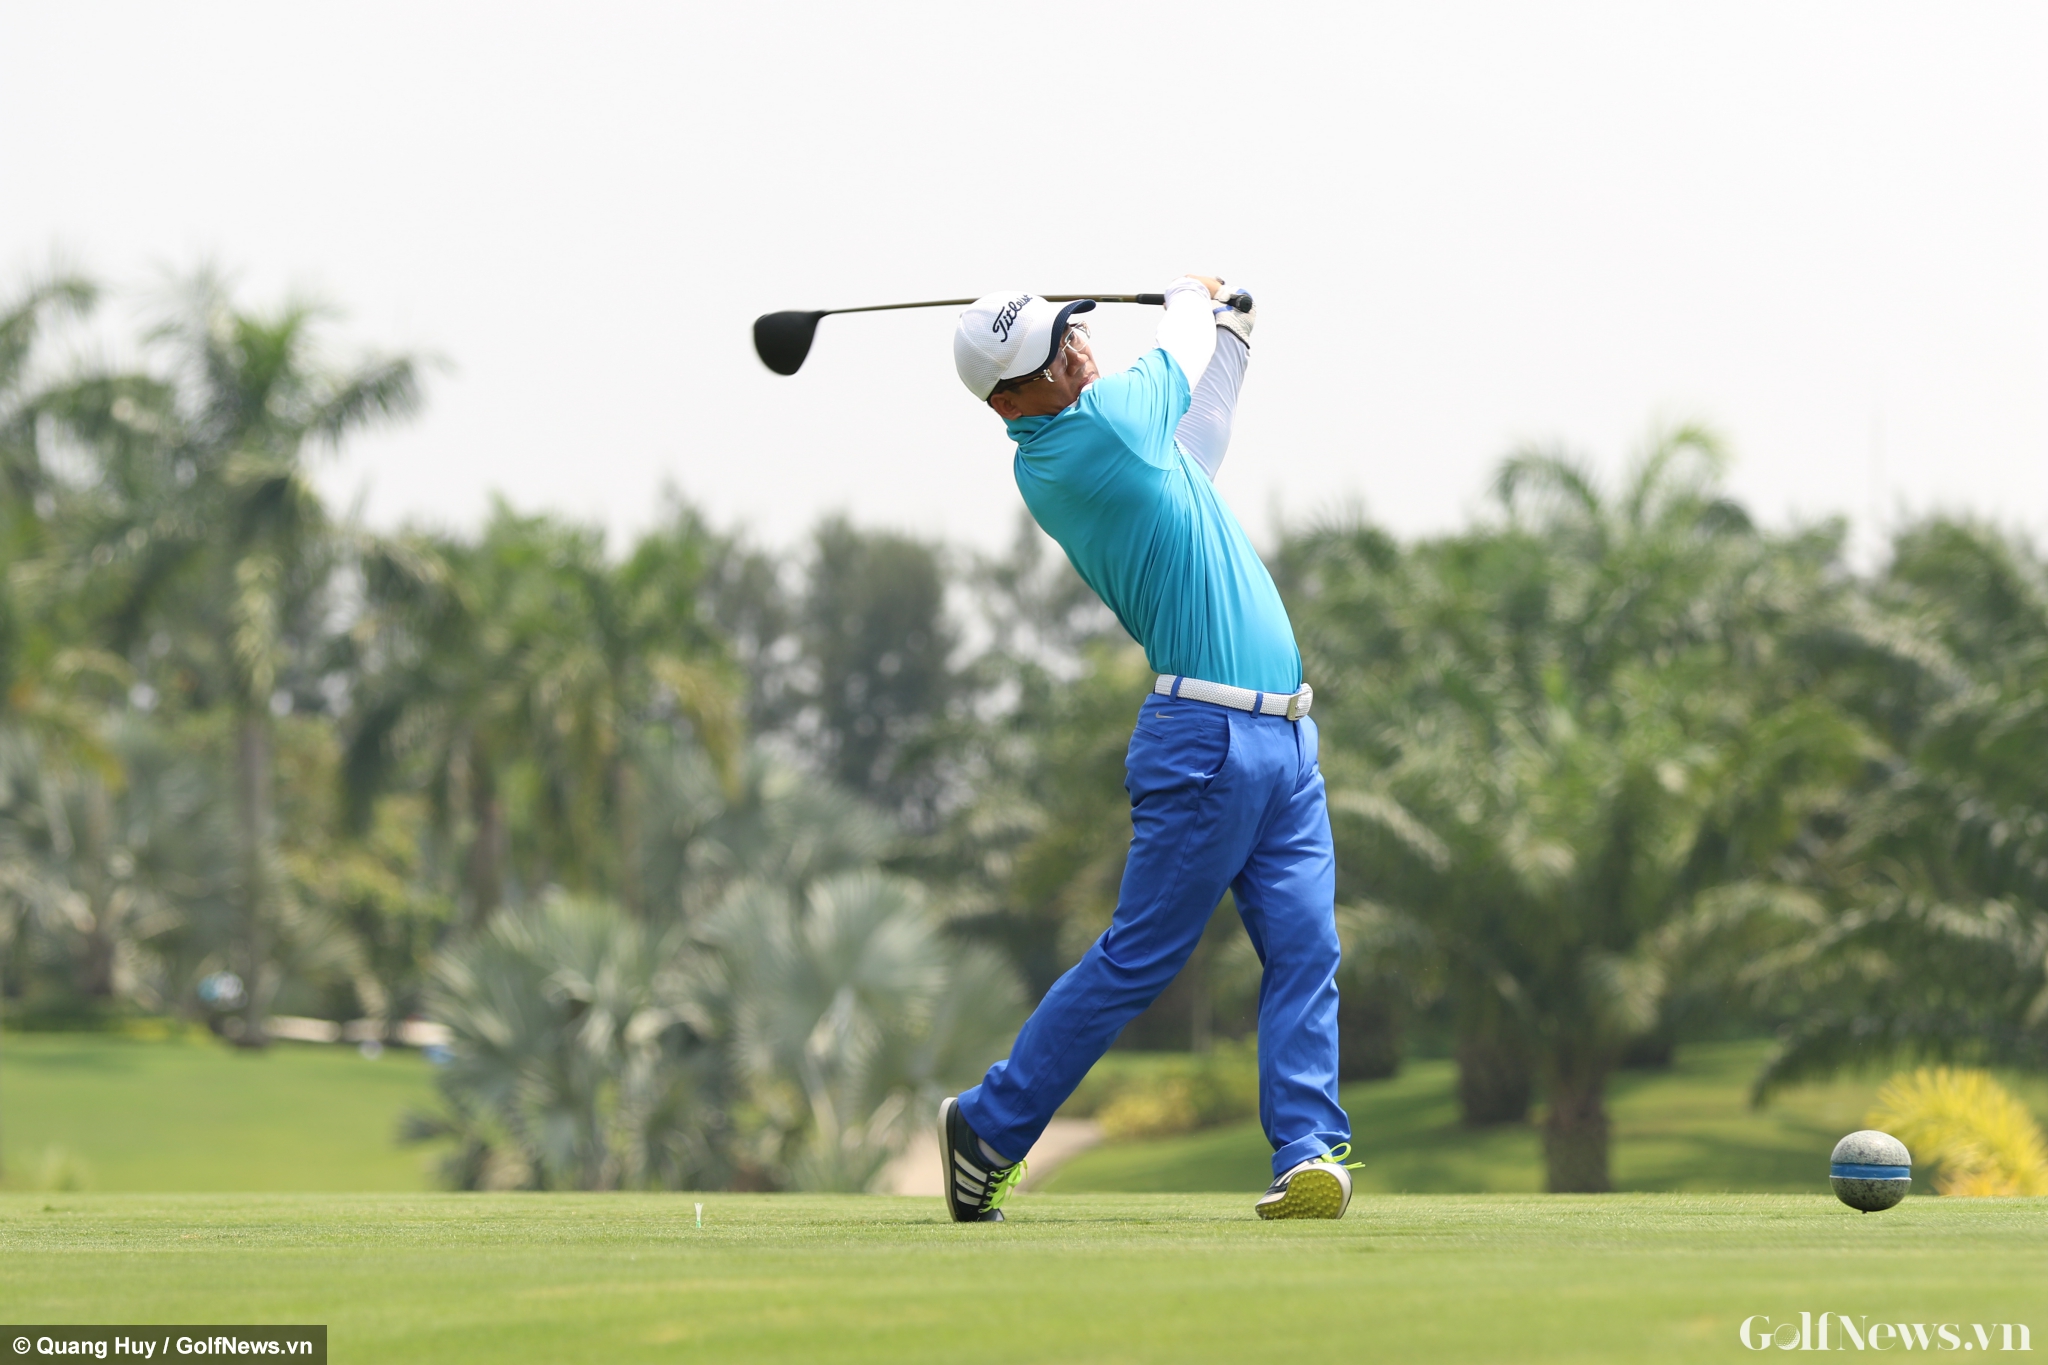 144 golfer tranh tài quyết liệt tại giải golf do Hội doanh nghiệp quận Bình Thạnh tổ chức